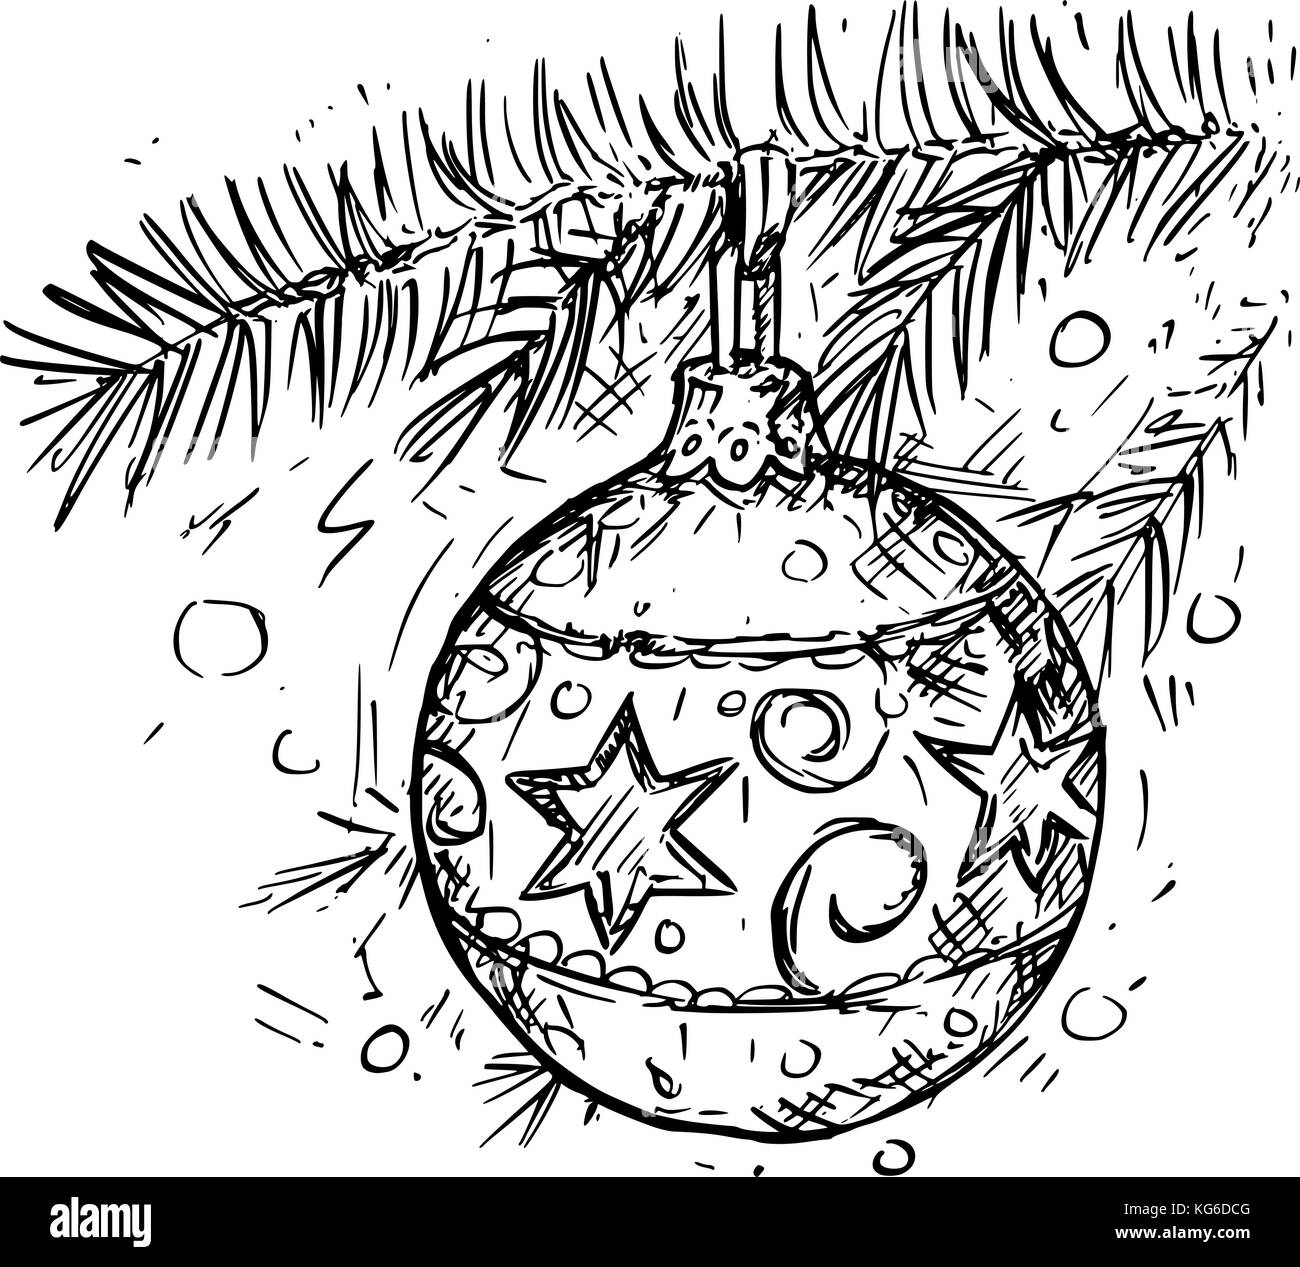 Handzeichnung Vector Illustration der christmas ball Dekoration auf dem Baum. Stock Vektor